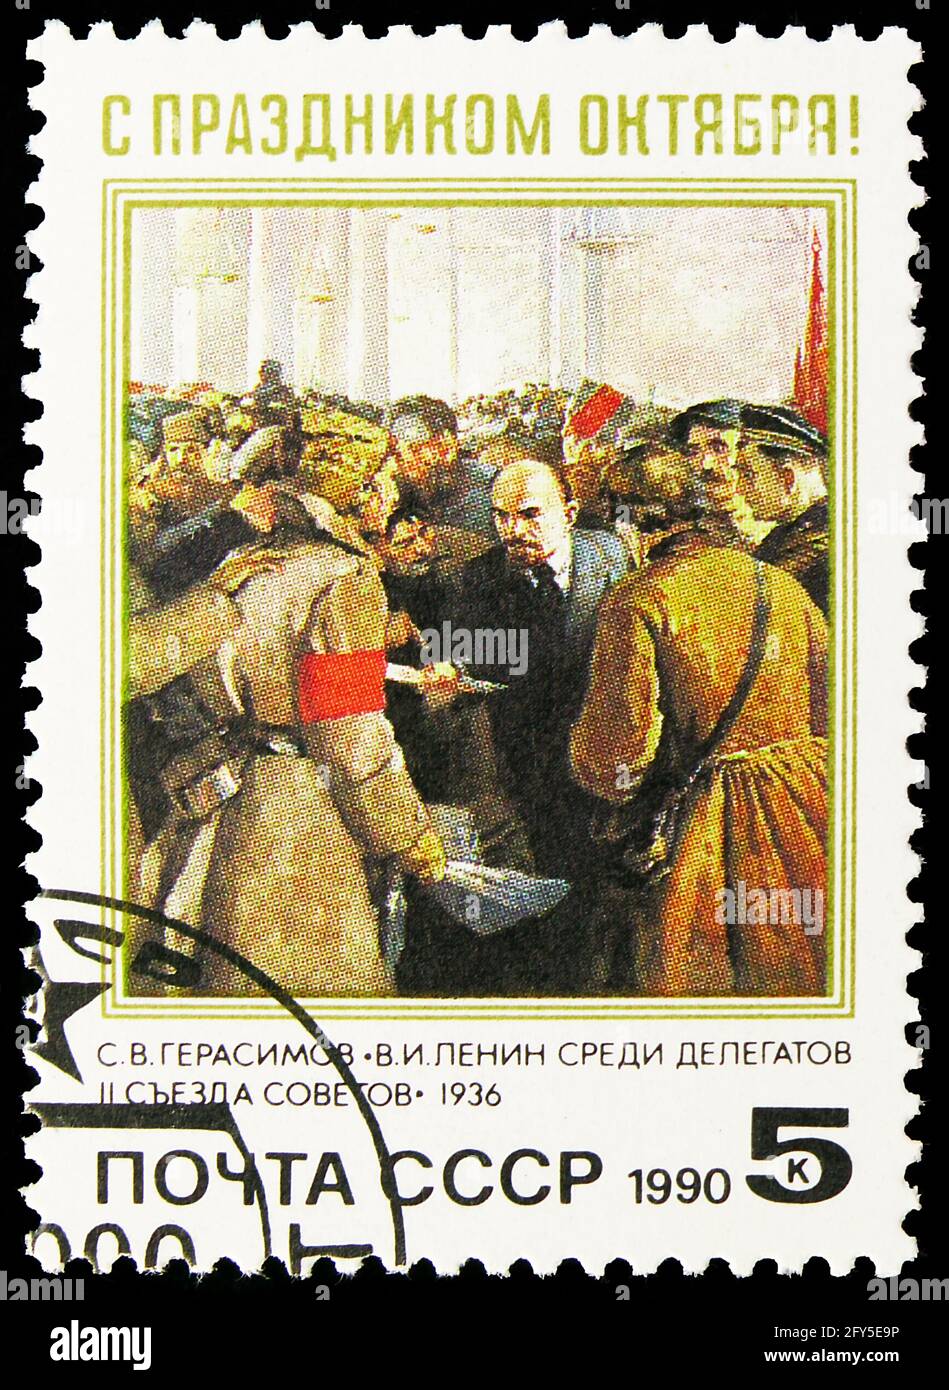 MOSKAU, RUSSLAND - 31. AUGUST 2019: Briefmarke gedruckt in der Sowjetunion (Russland) gewidmet 73. Jahrestag der Großen Oktoberrevolution, Serie, circa Stockfoto